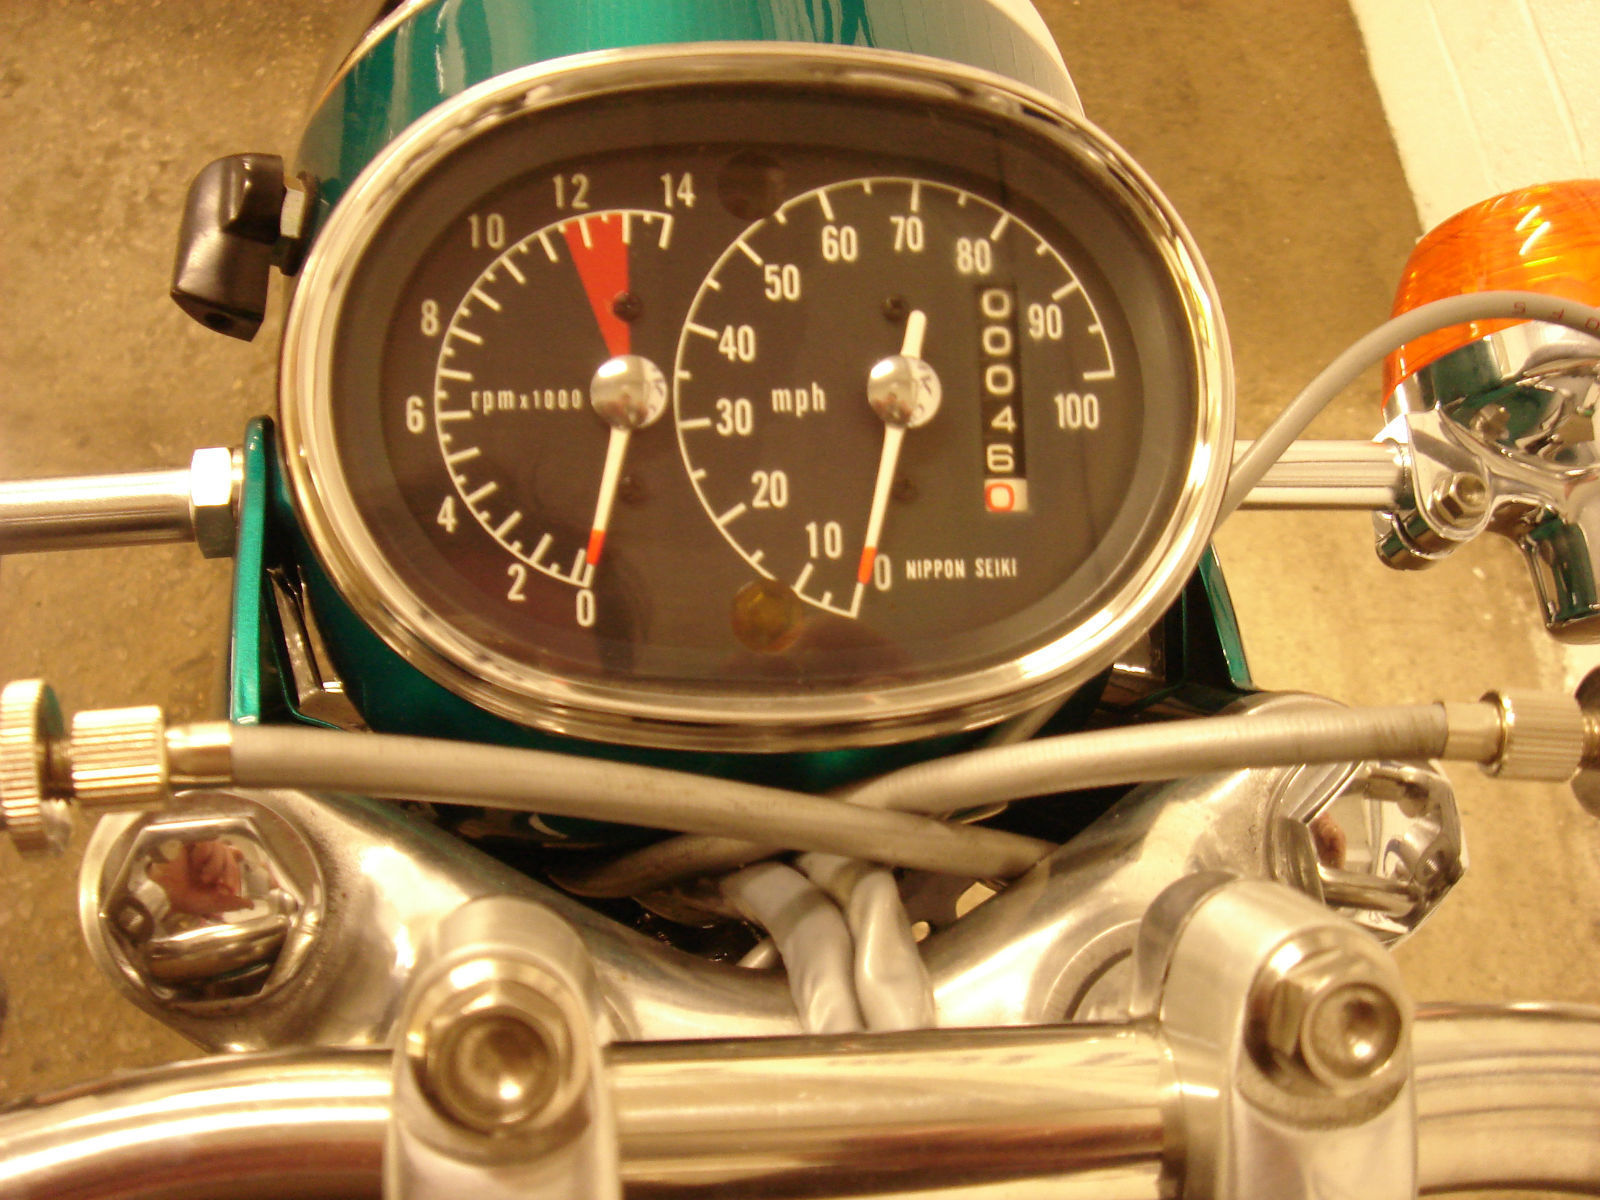 Honda CB125 - 1971